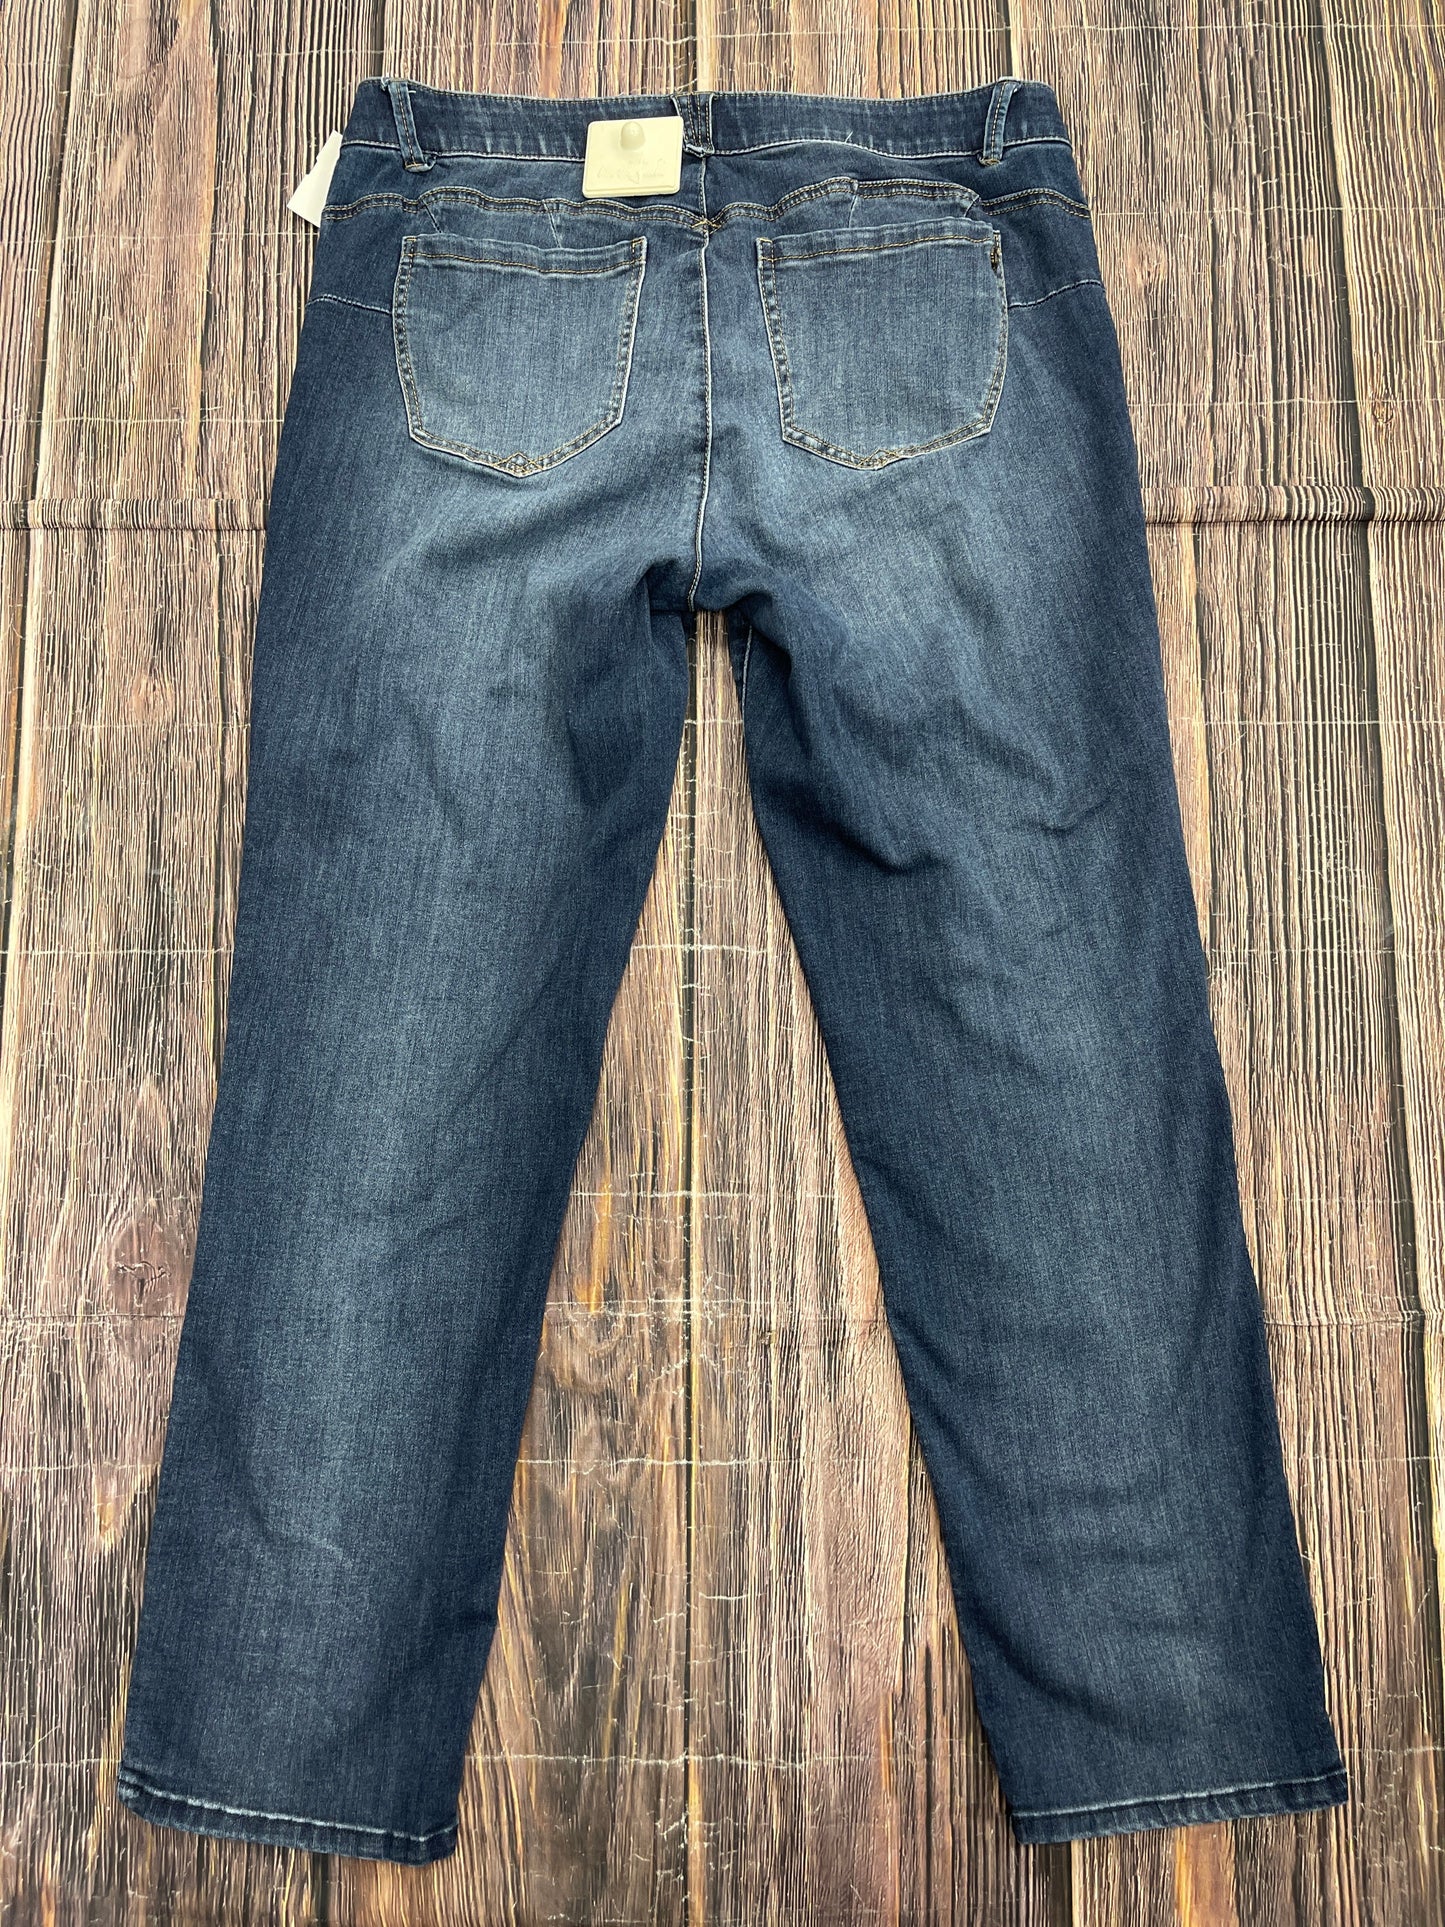 Jeans Skinny By Democracy  Size: 16